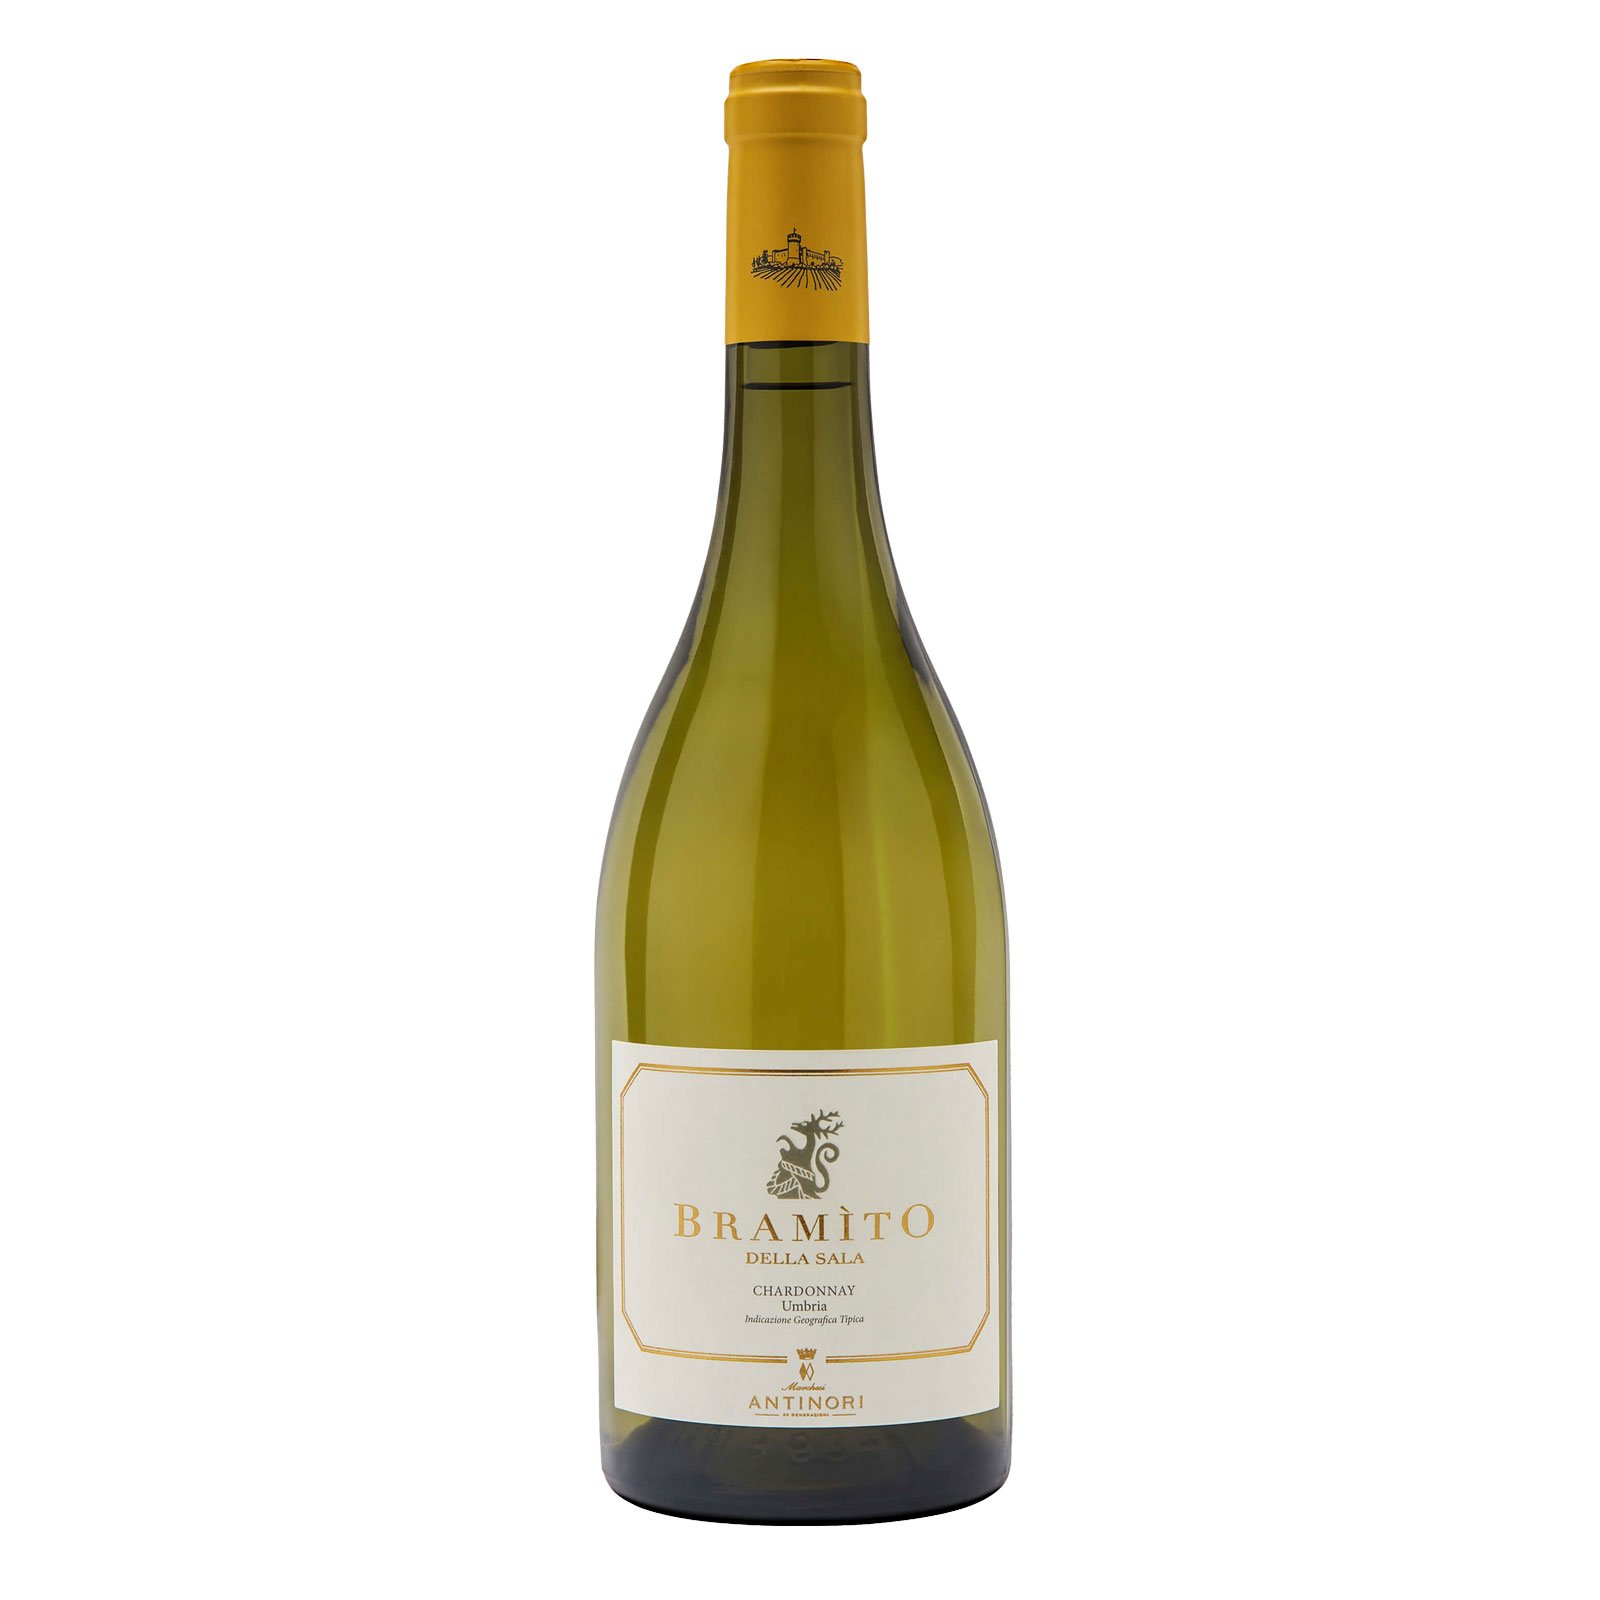 Bramìto della Sala IGT Umbria 2019 Antinori Vino bianco secco per tutte le stagioni, Chardonnay abbinamenti pesce, crostacei, carni bianche